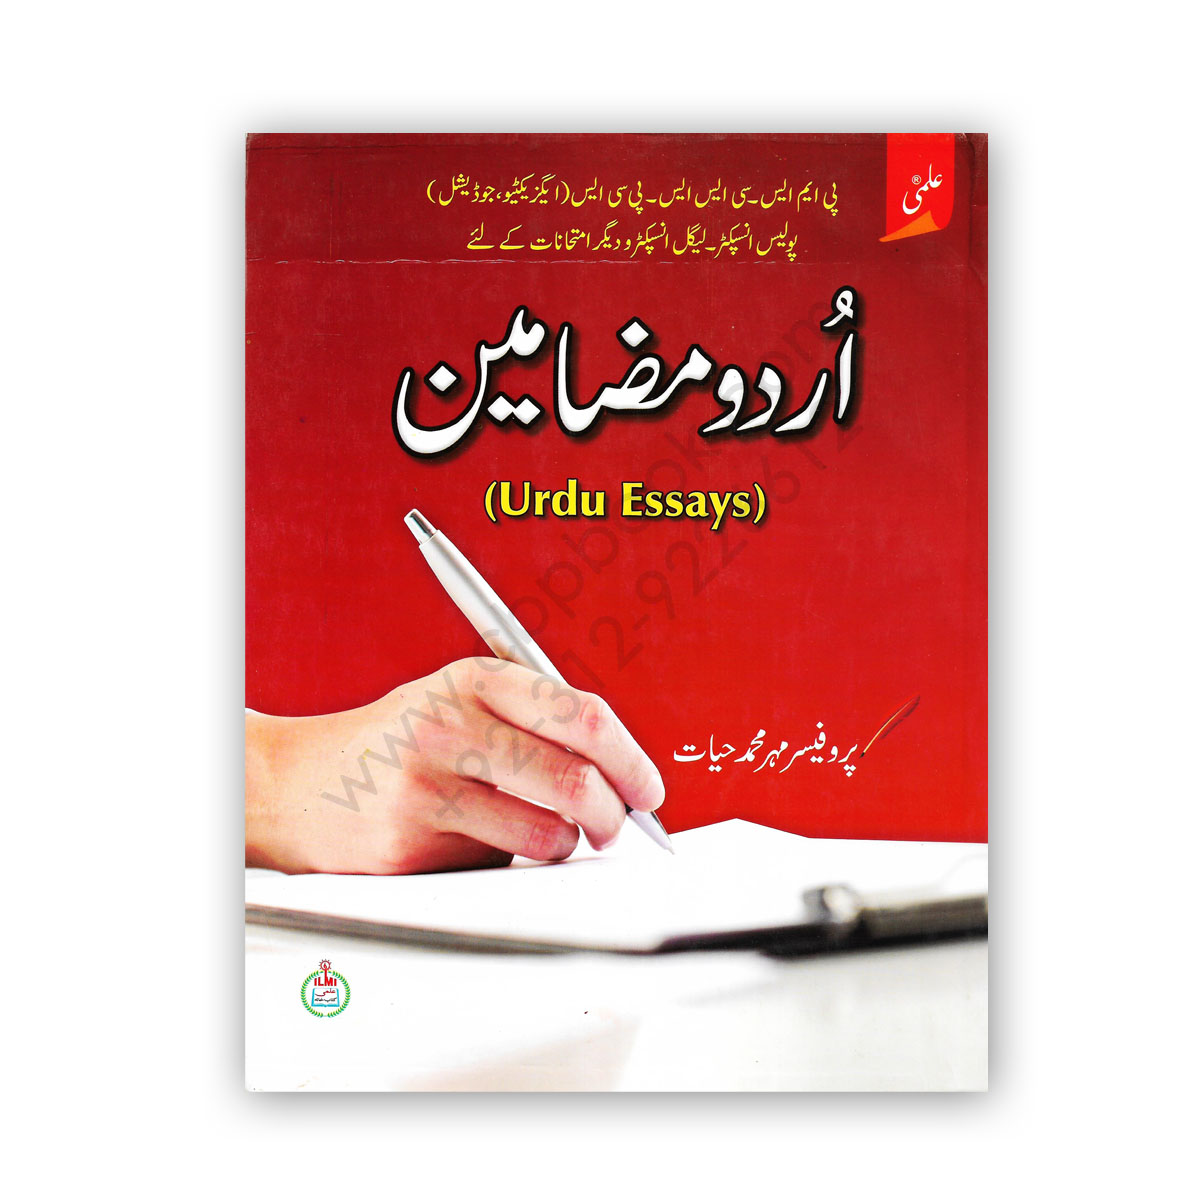 essay on urdu book